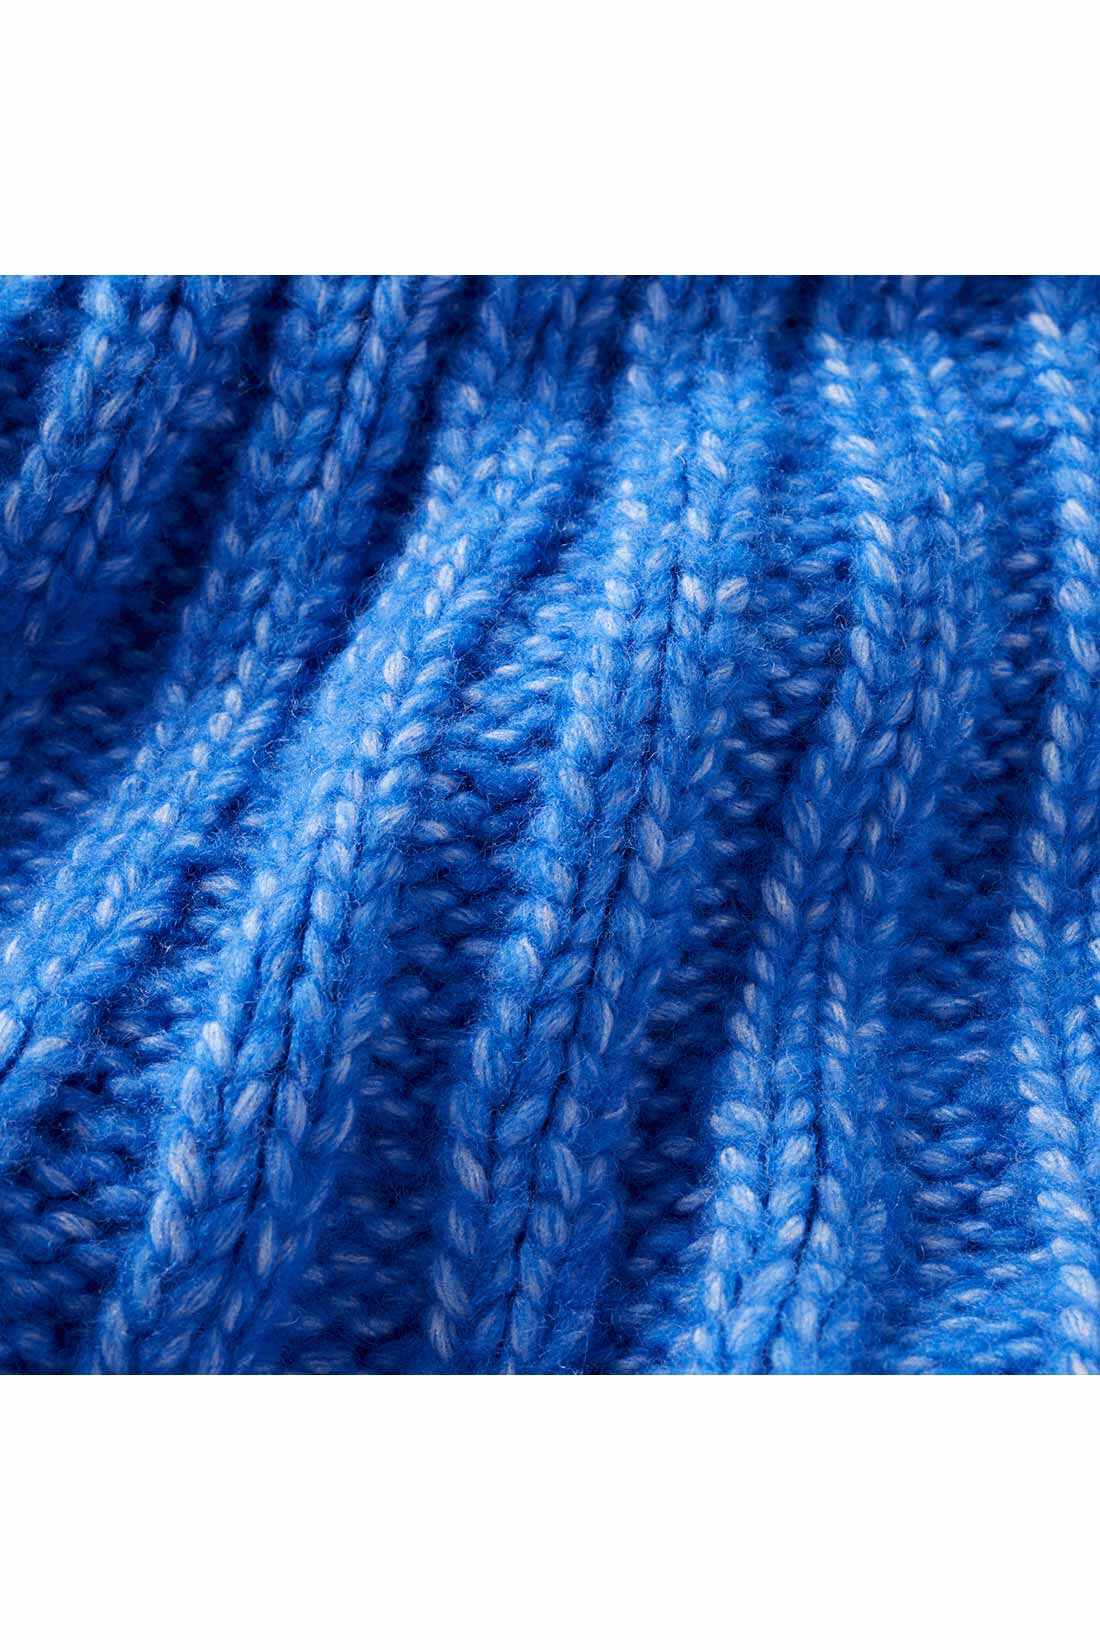 THREE FIFTY STANDARD|THREE FIFTY STANDARD ざっくり編みの求心柄ニットプルオーバー〈ブルー〉|太めのミックス糸を使用して立体的に編み立てた求心柄。